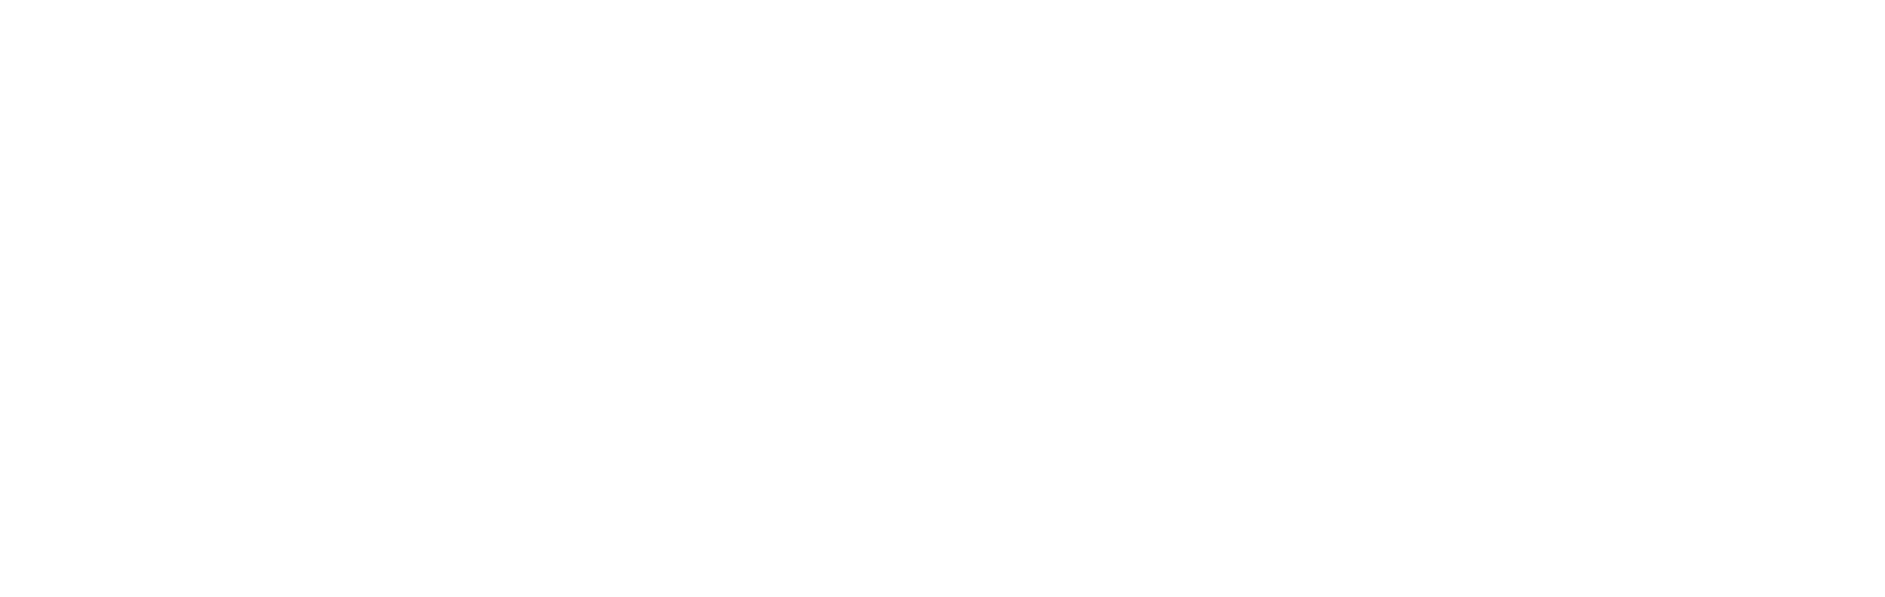 Silverneedle Ventures